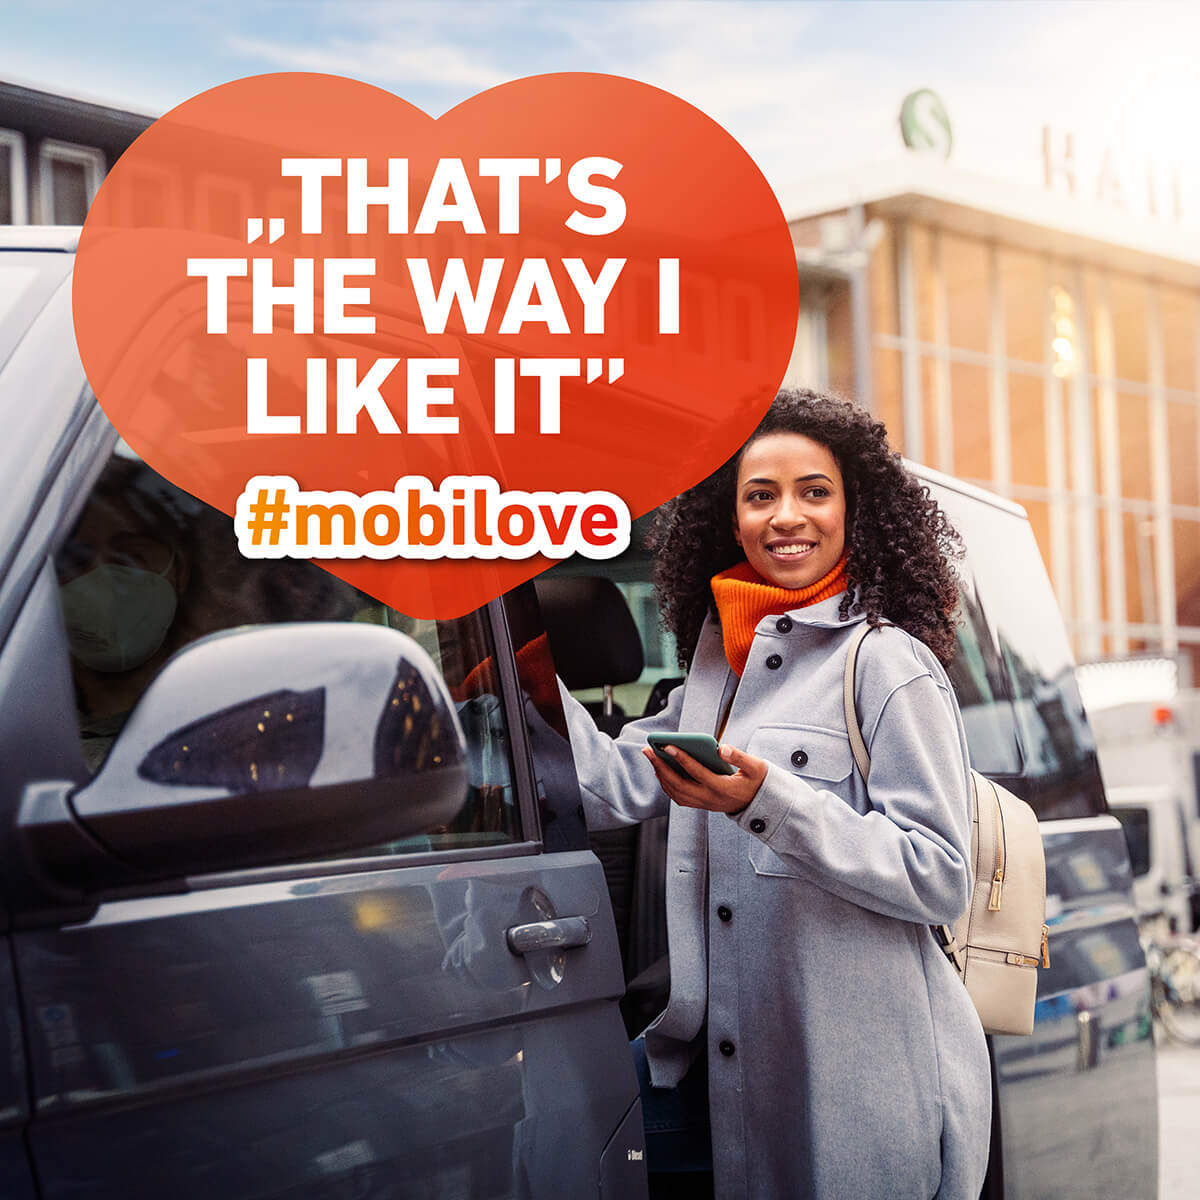 Mobilove-Visual: Frau steht lächelnd mit ihrem Smartphone neben einem Van, die Herzchen-Kommentarblase im Bild: "That's the way I like it"